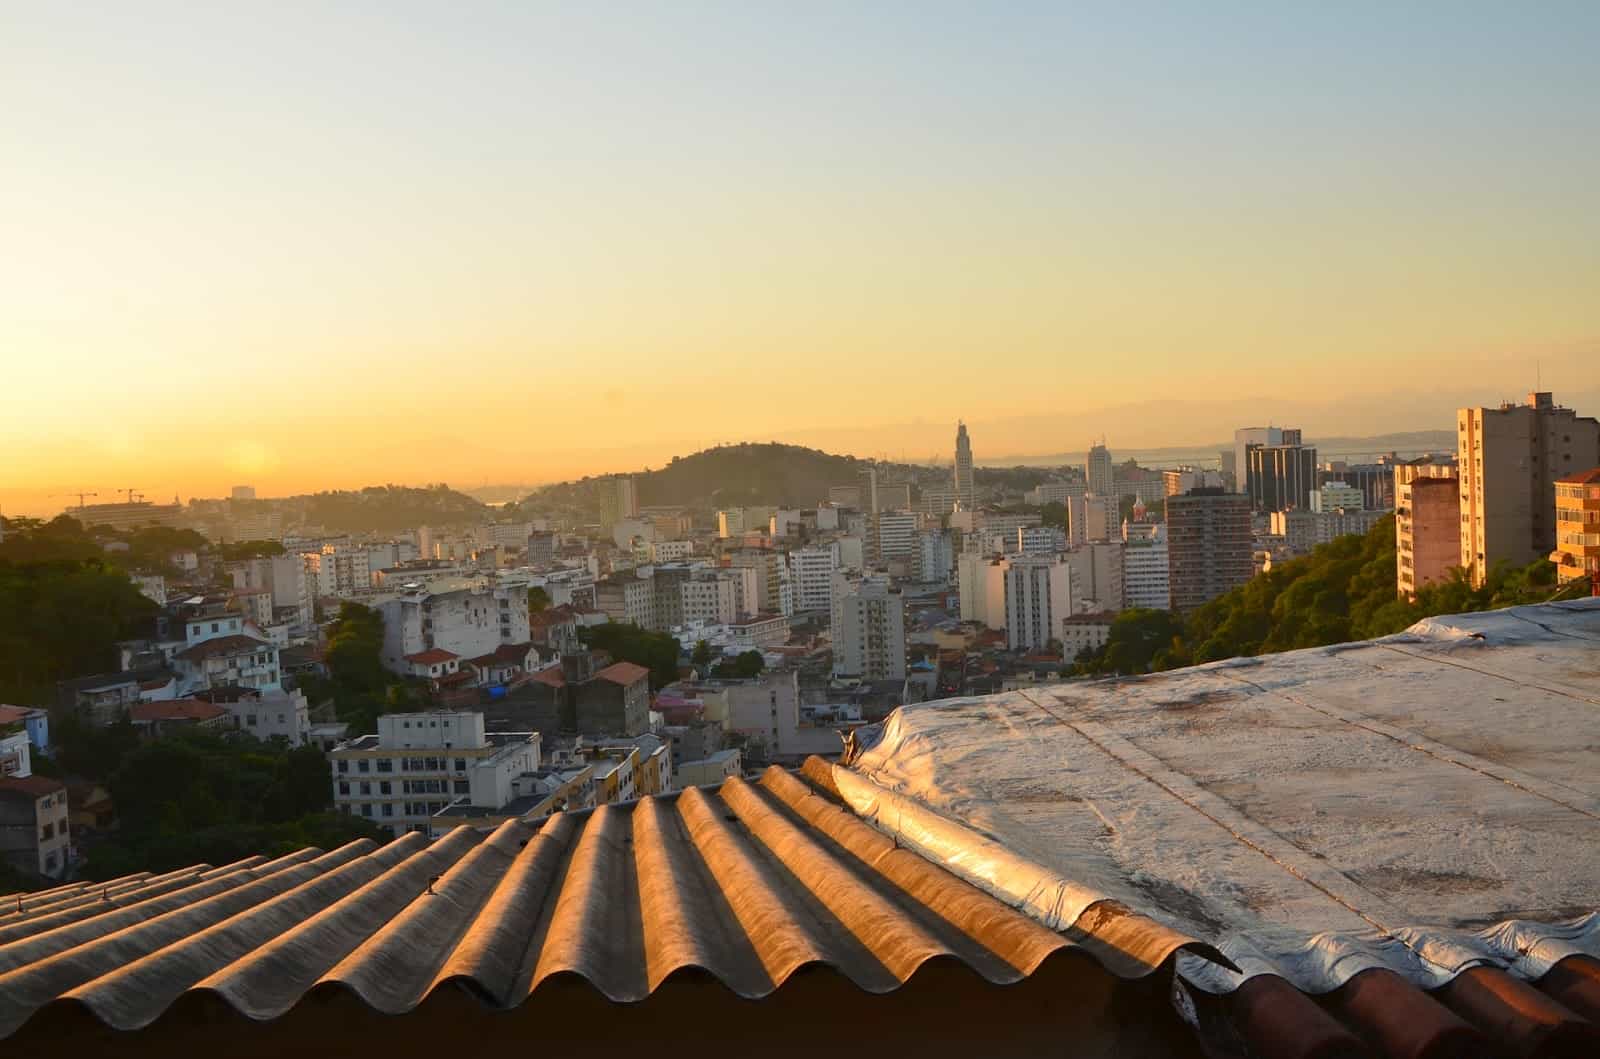 View from Santa Teresa in Rio de Janeiro, Brazil